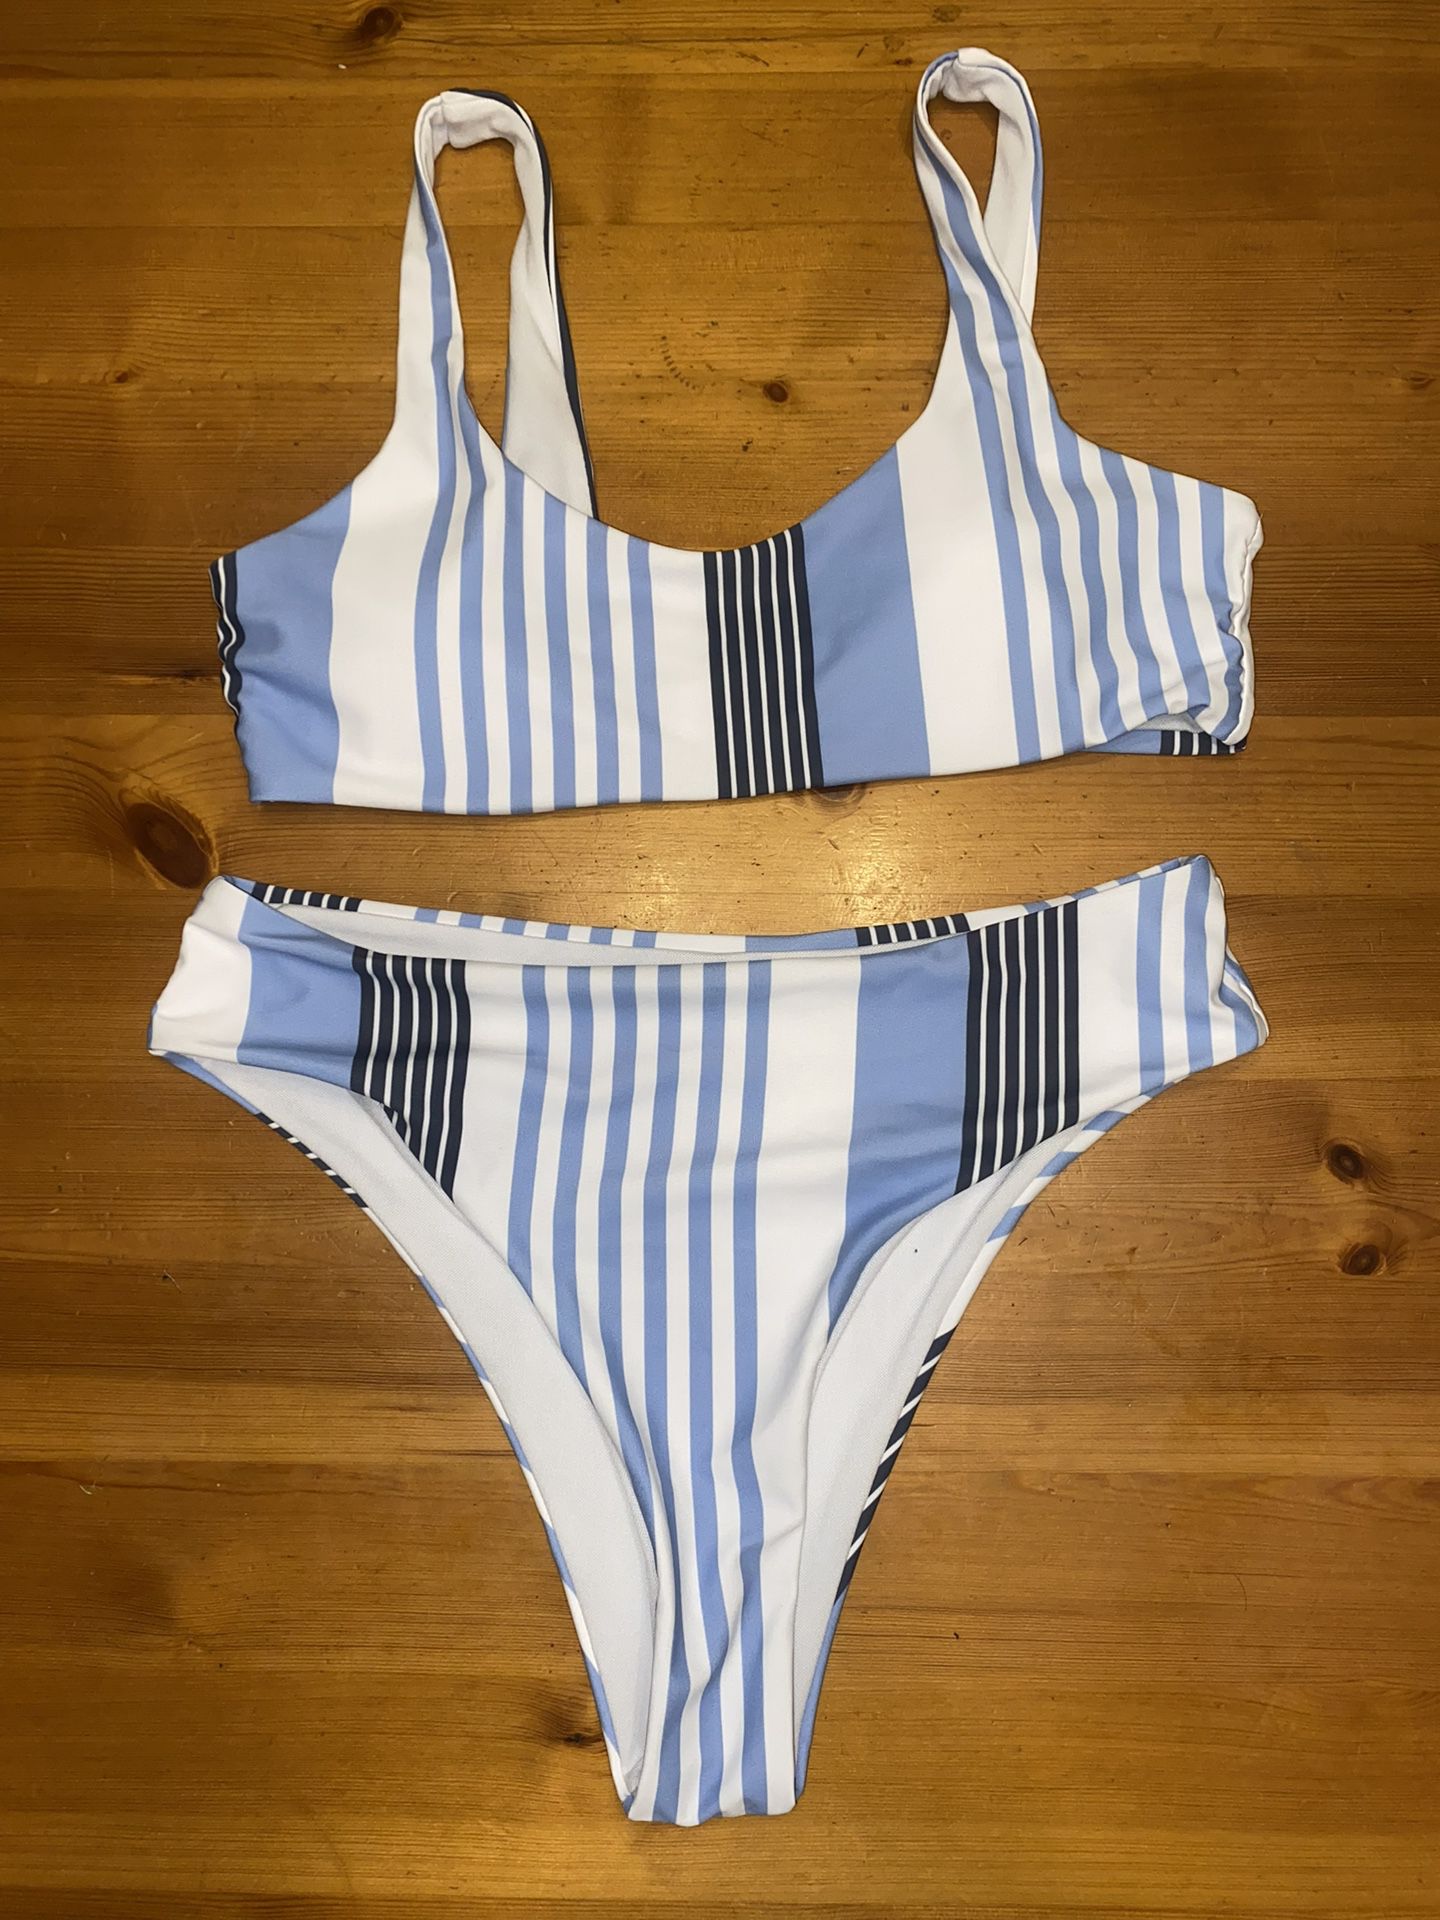 Women's Shein 2-Piece Swim Bikini Size M Blue, White and Black